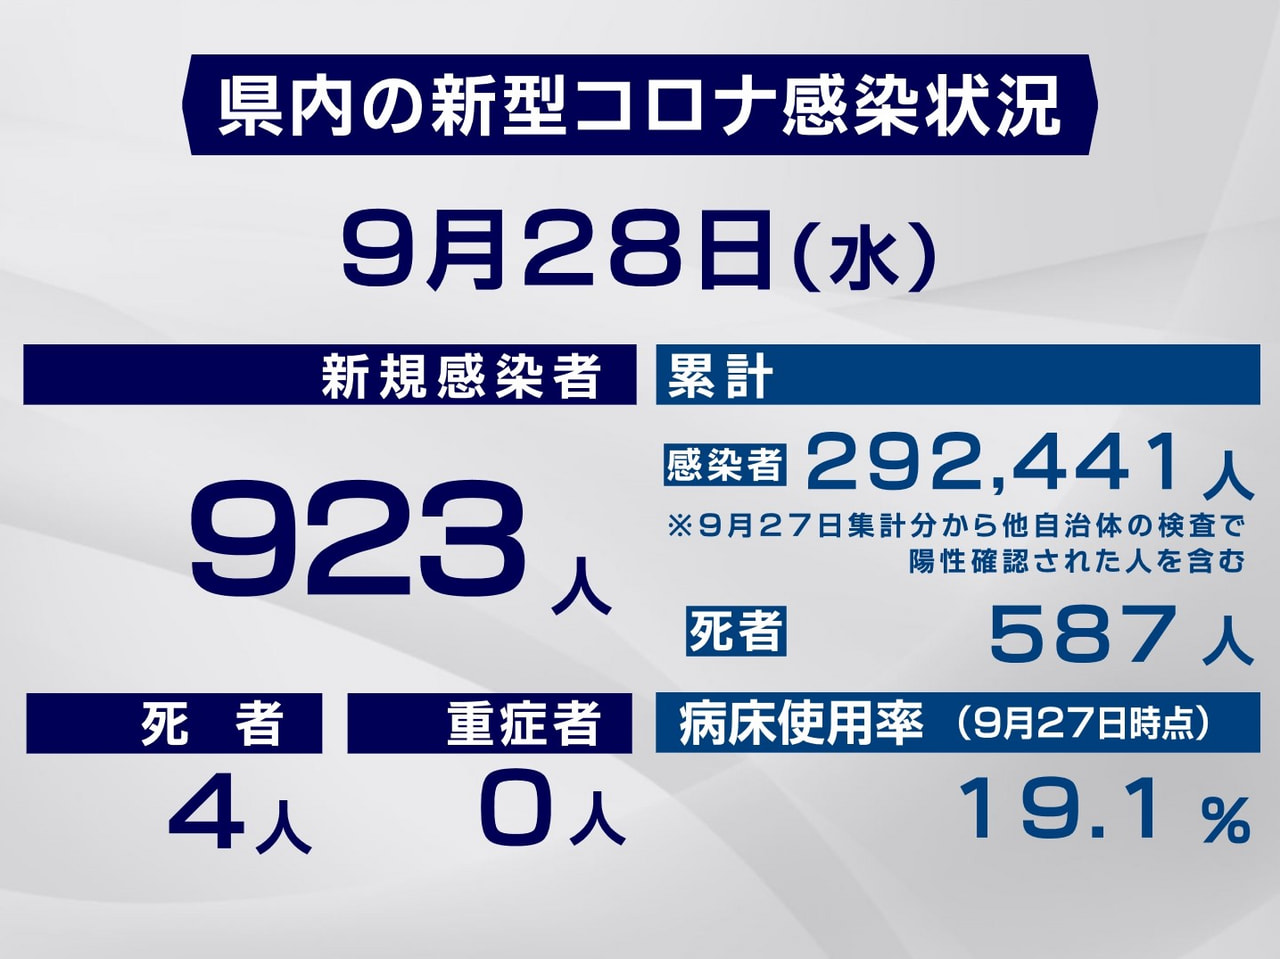 岐阜県と岐阜市は２８日、新型コロナウイルスの感染者が新たに９２３人、また４人の死...